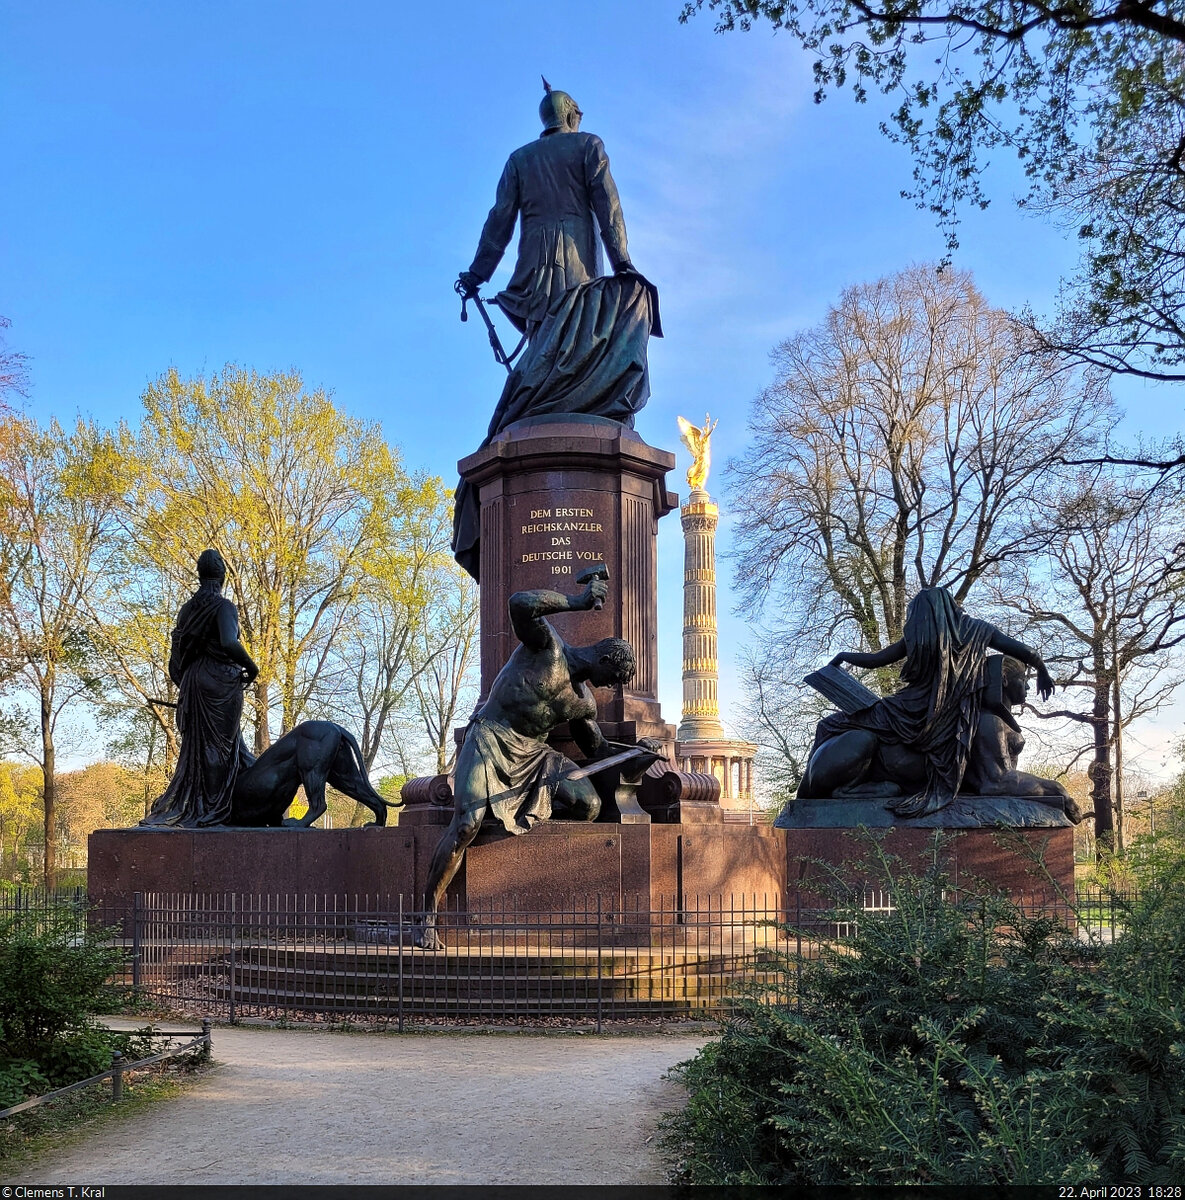 Bismarck-Nationaldenkmal und Siegessule am Groen Stern im Berliner Tiergarten.

🕓 22.4.2023 | 18:28 Uhr